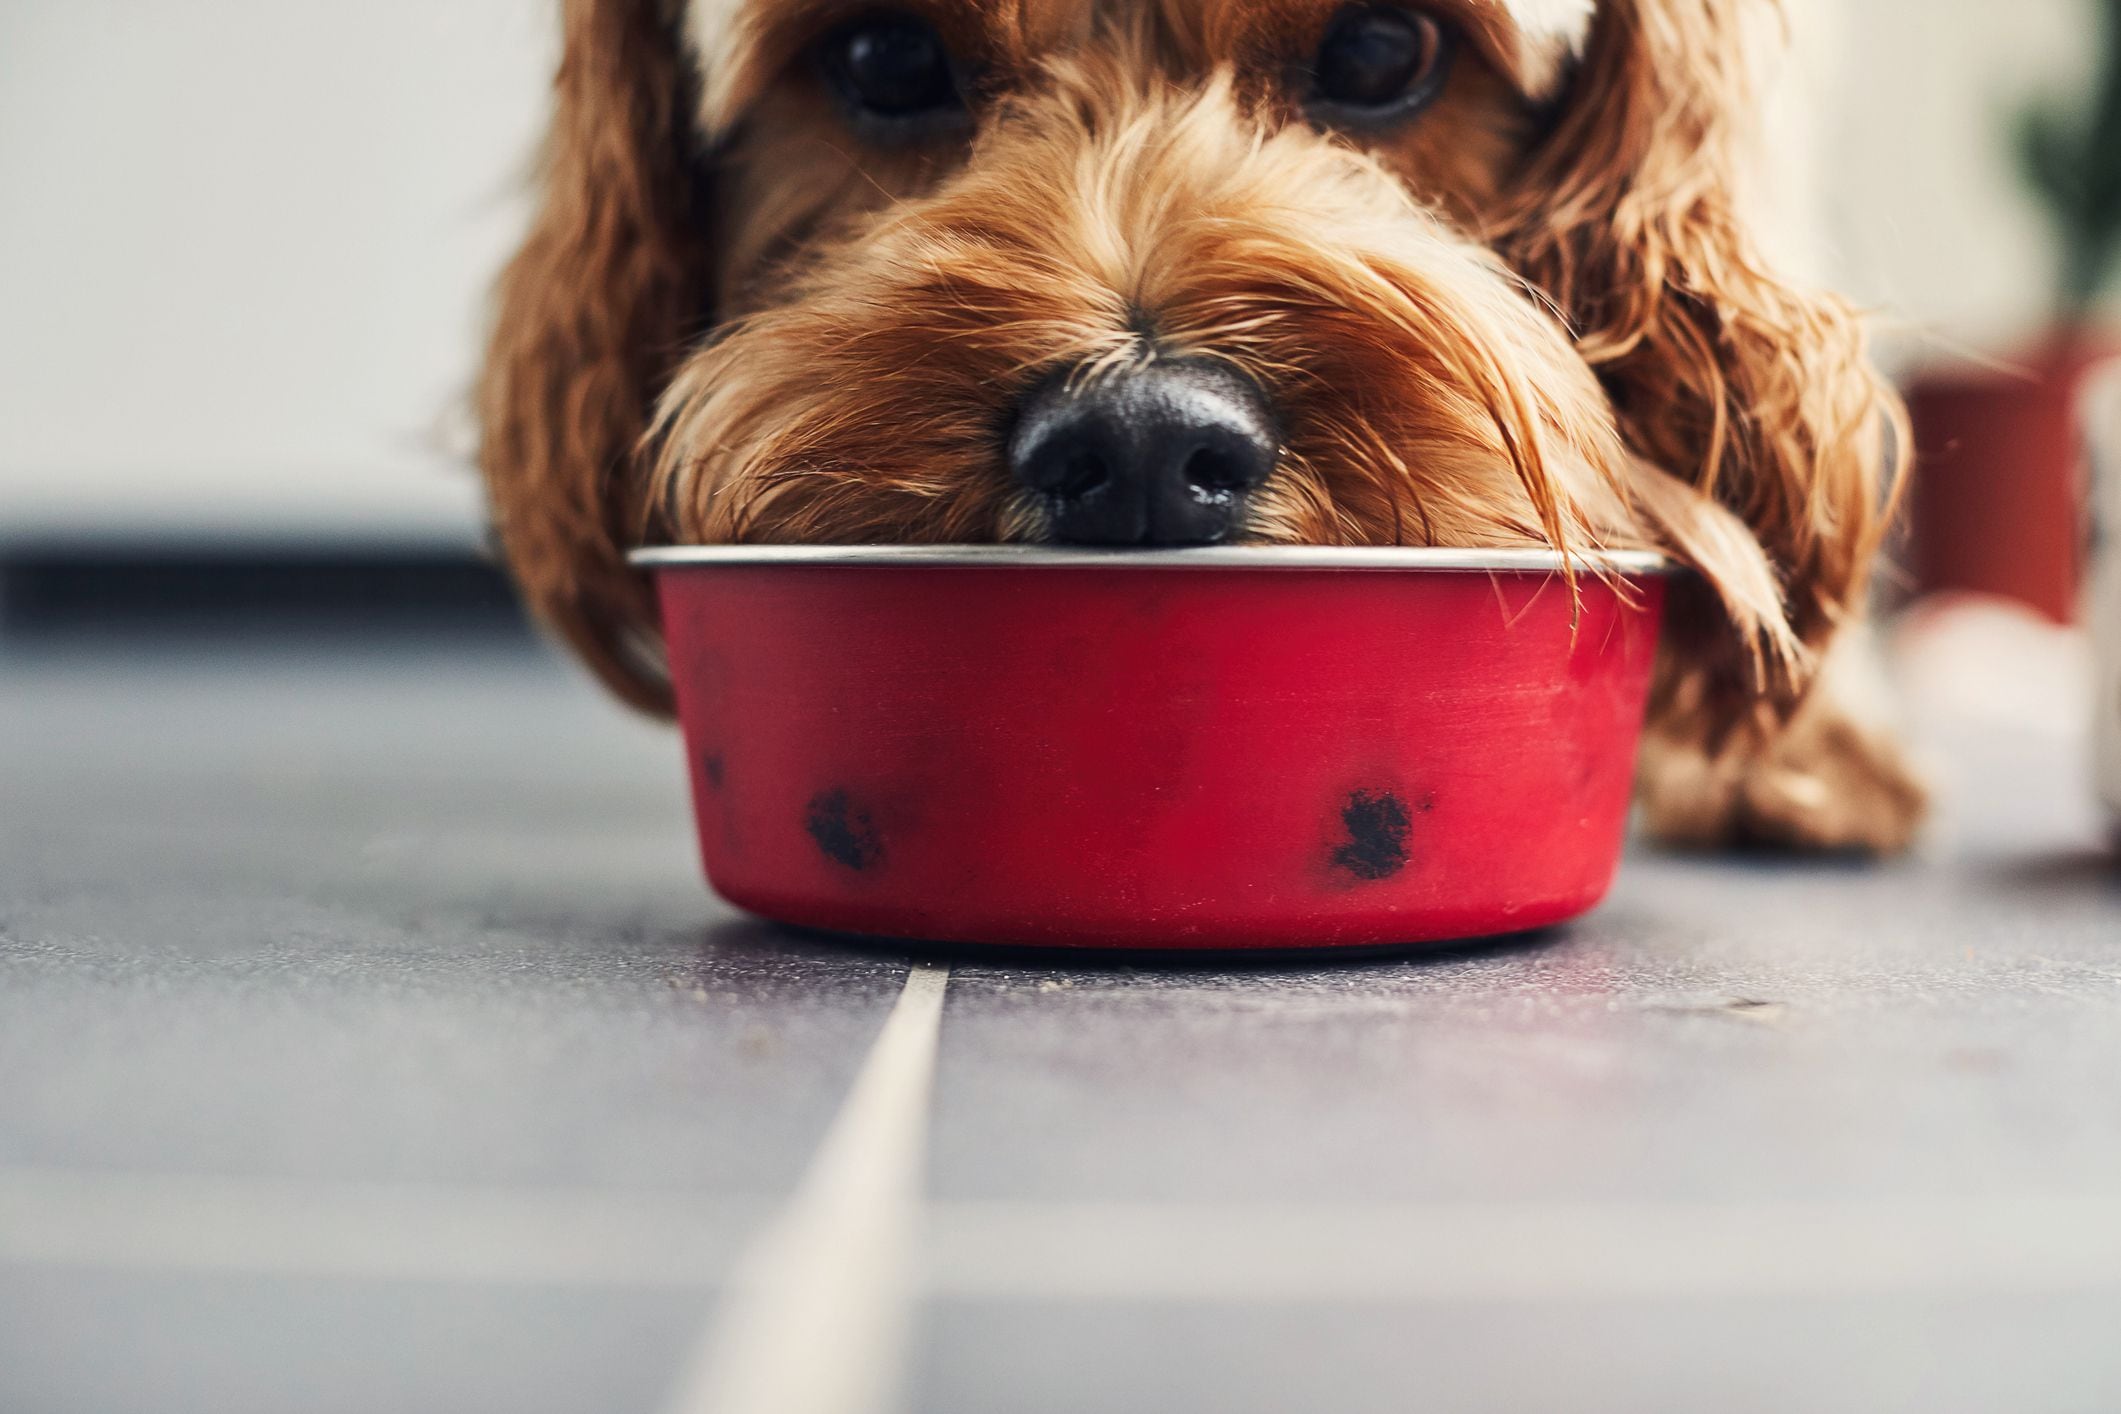 Perros y gatos en EE.UU. consumen cerca de una quinta parte de la carne que sus contrapartes humanas
(Getty Images)